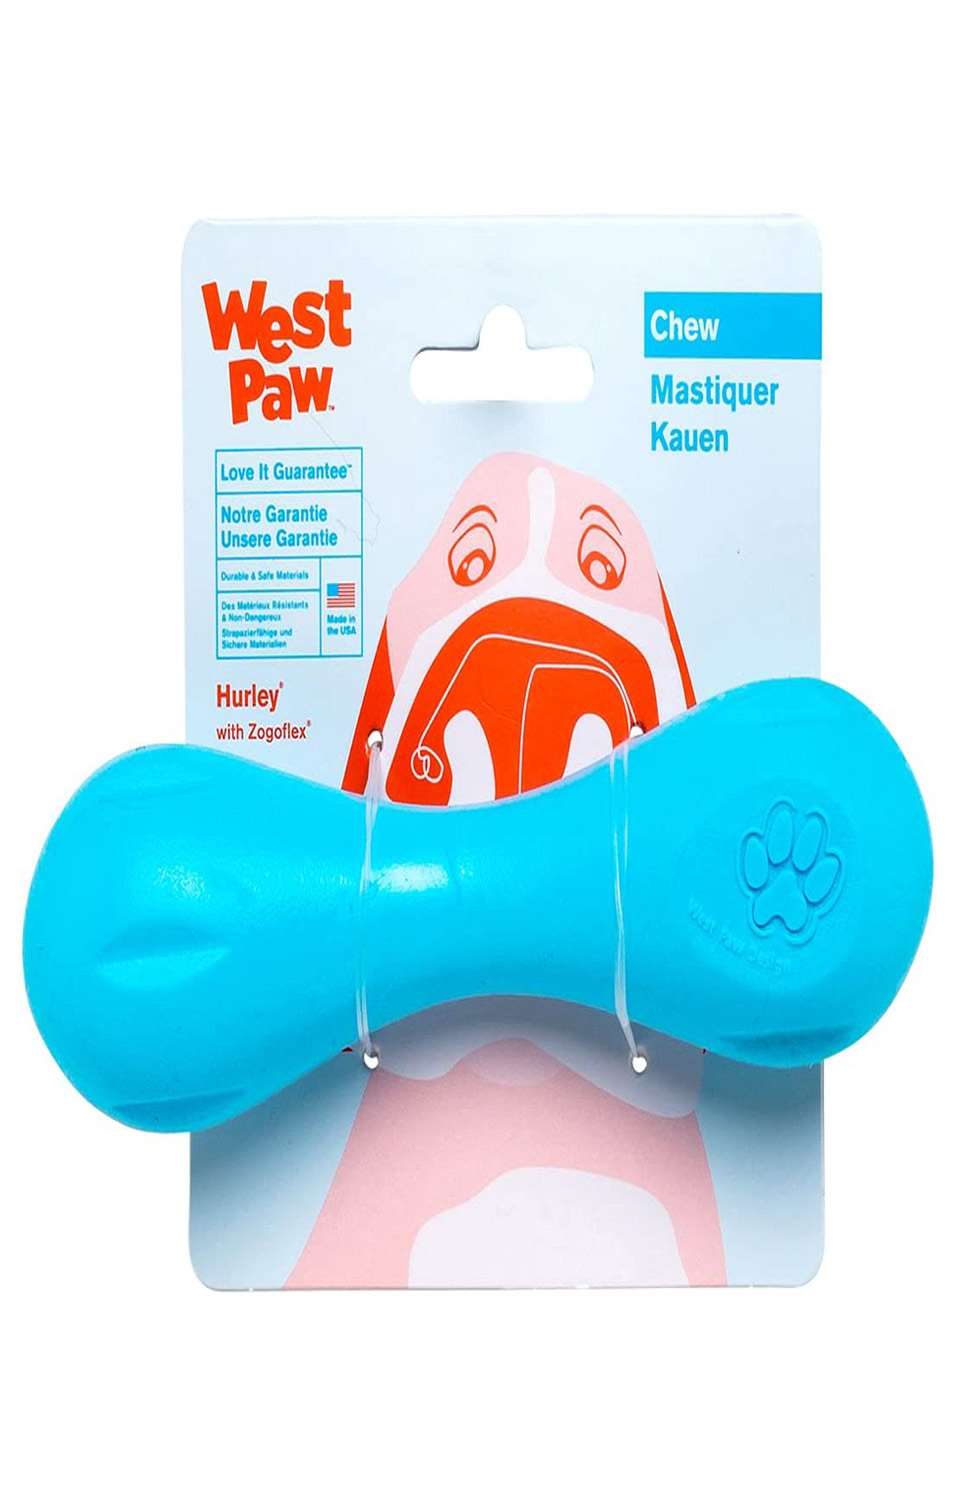 West Paw Zogoflex Hurley Dog Bone Chew Toy